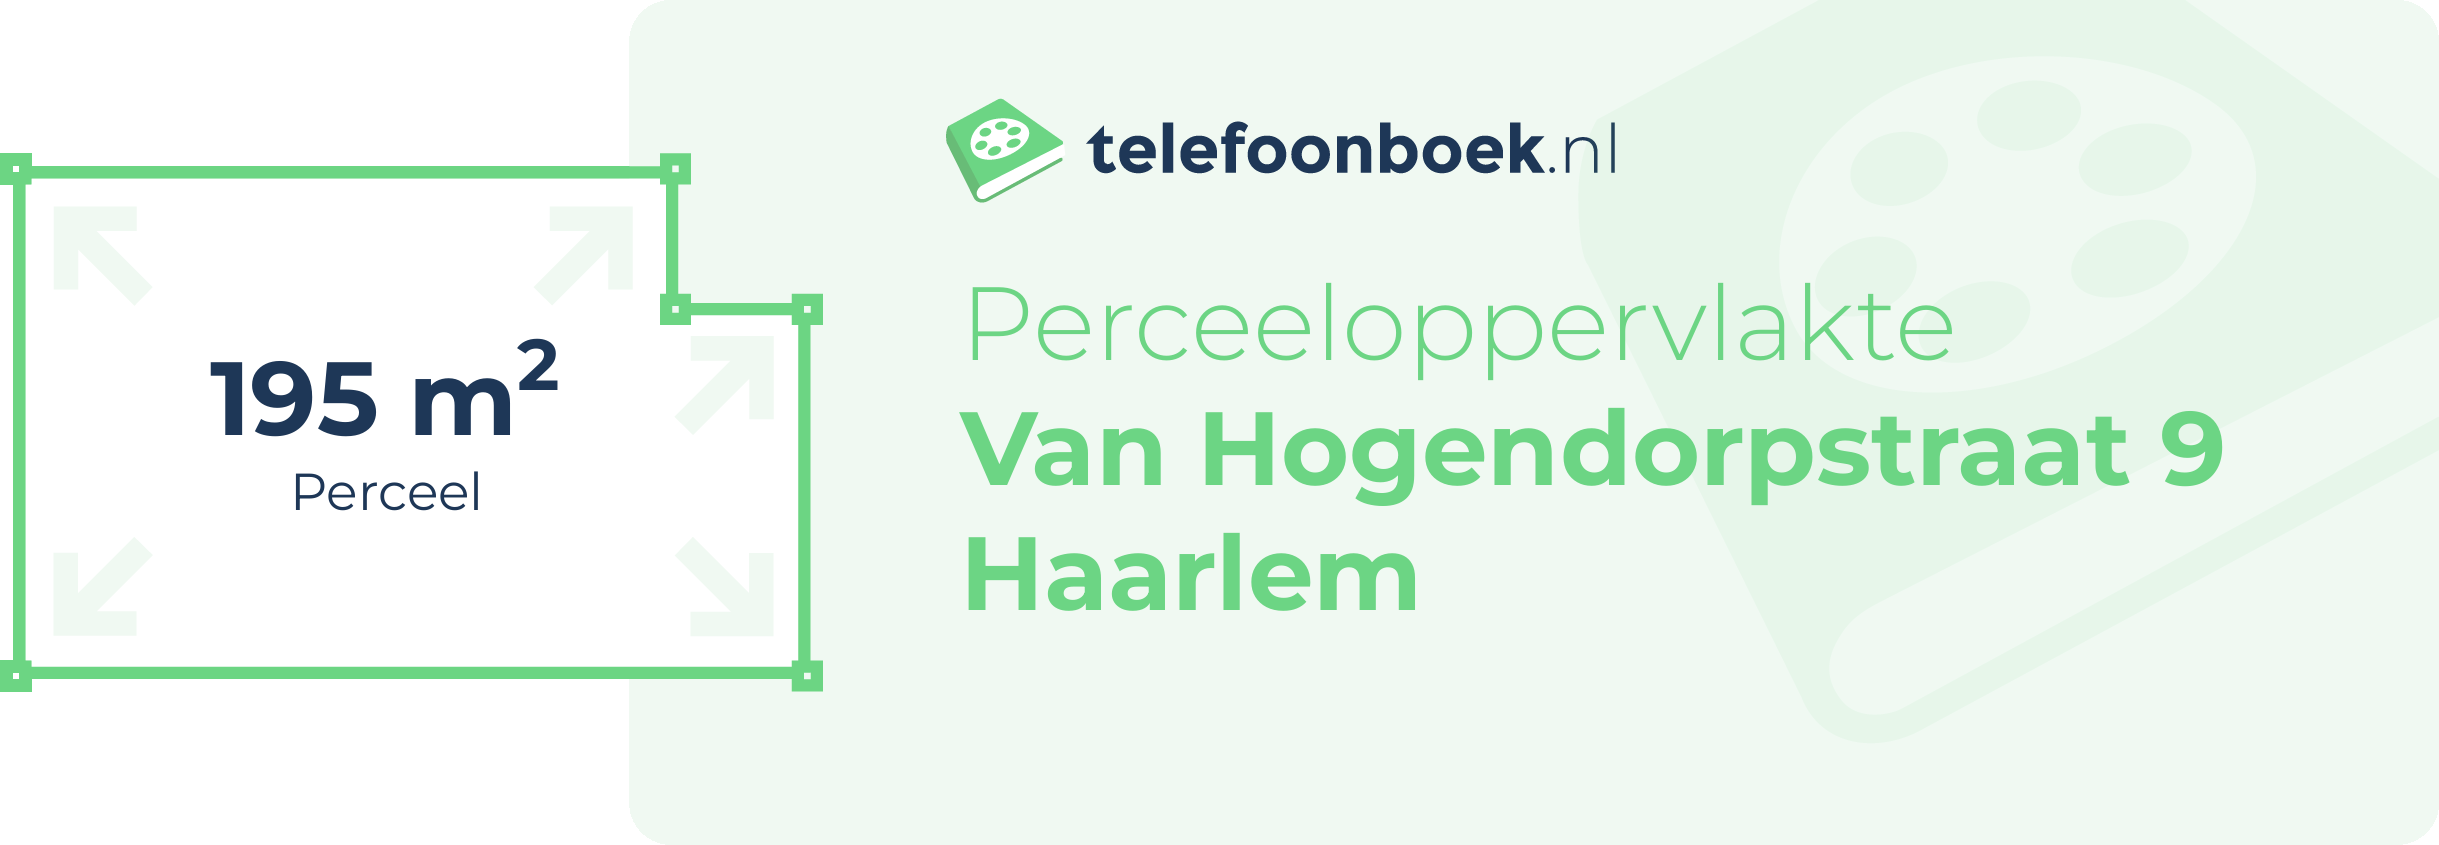 Perceeloppervlakte Van Hogendorpstraat 9 Haarlem